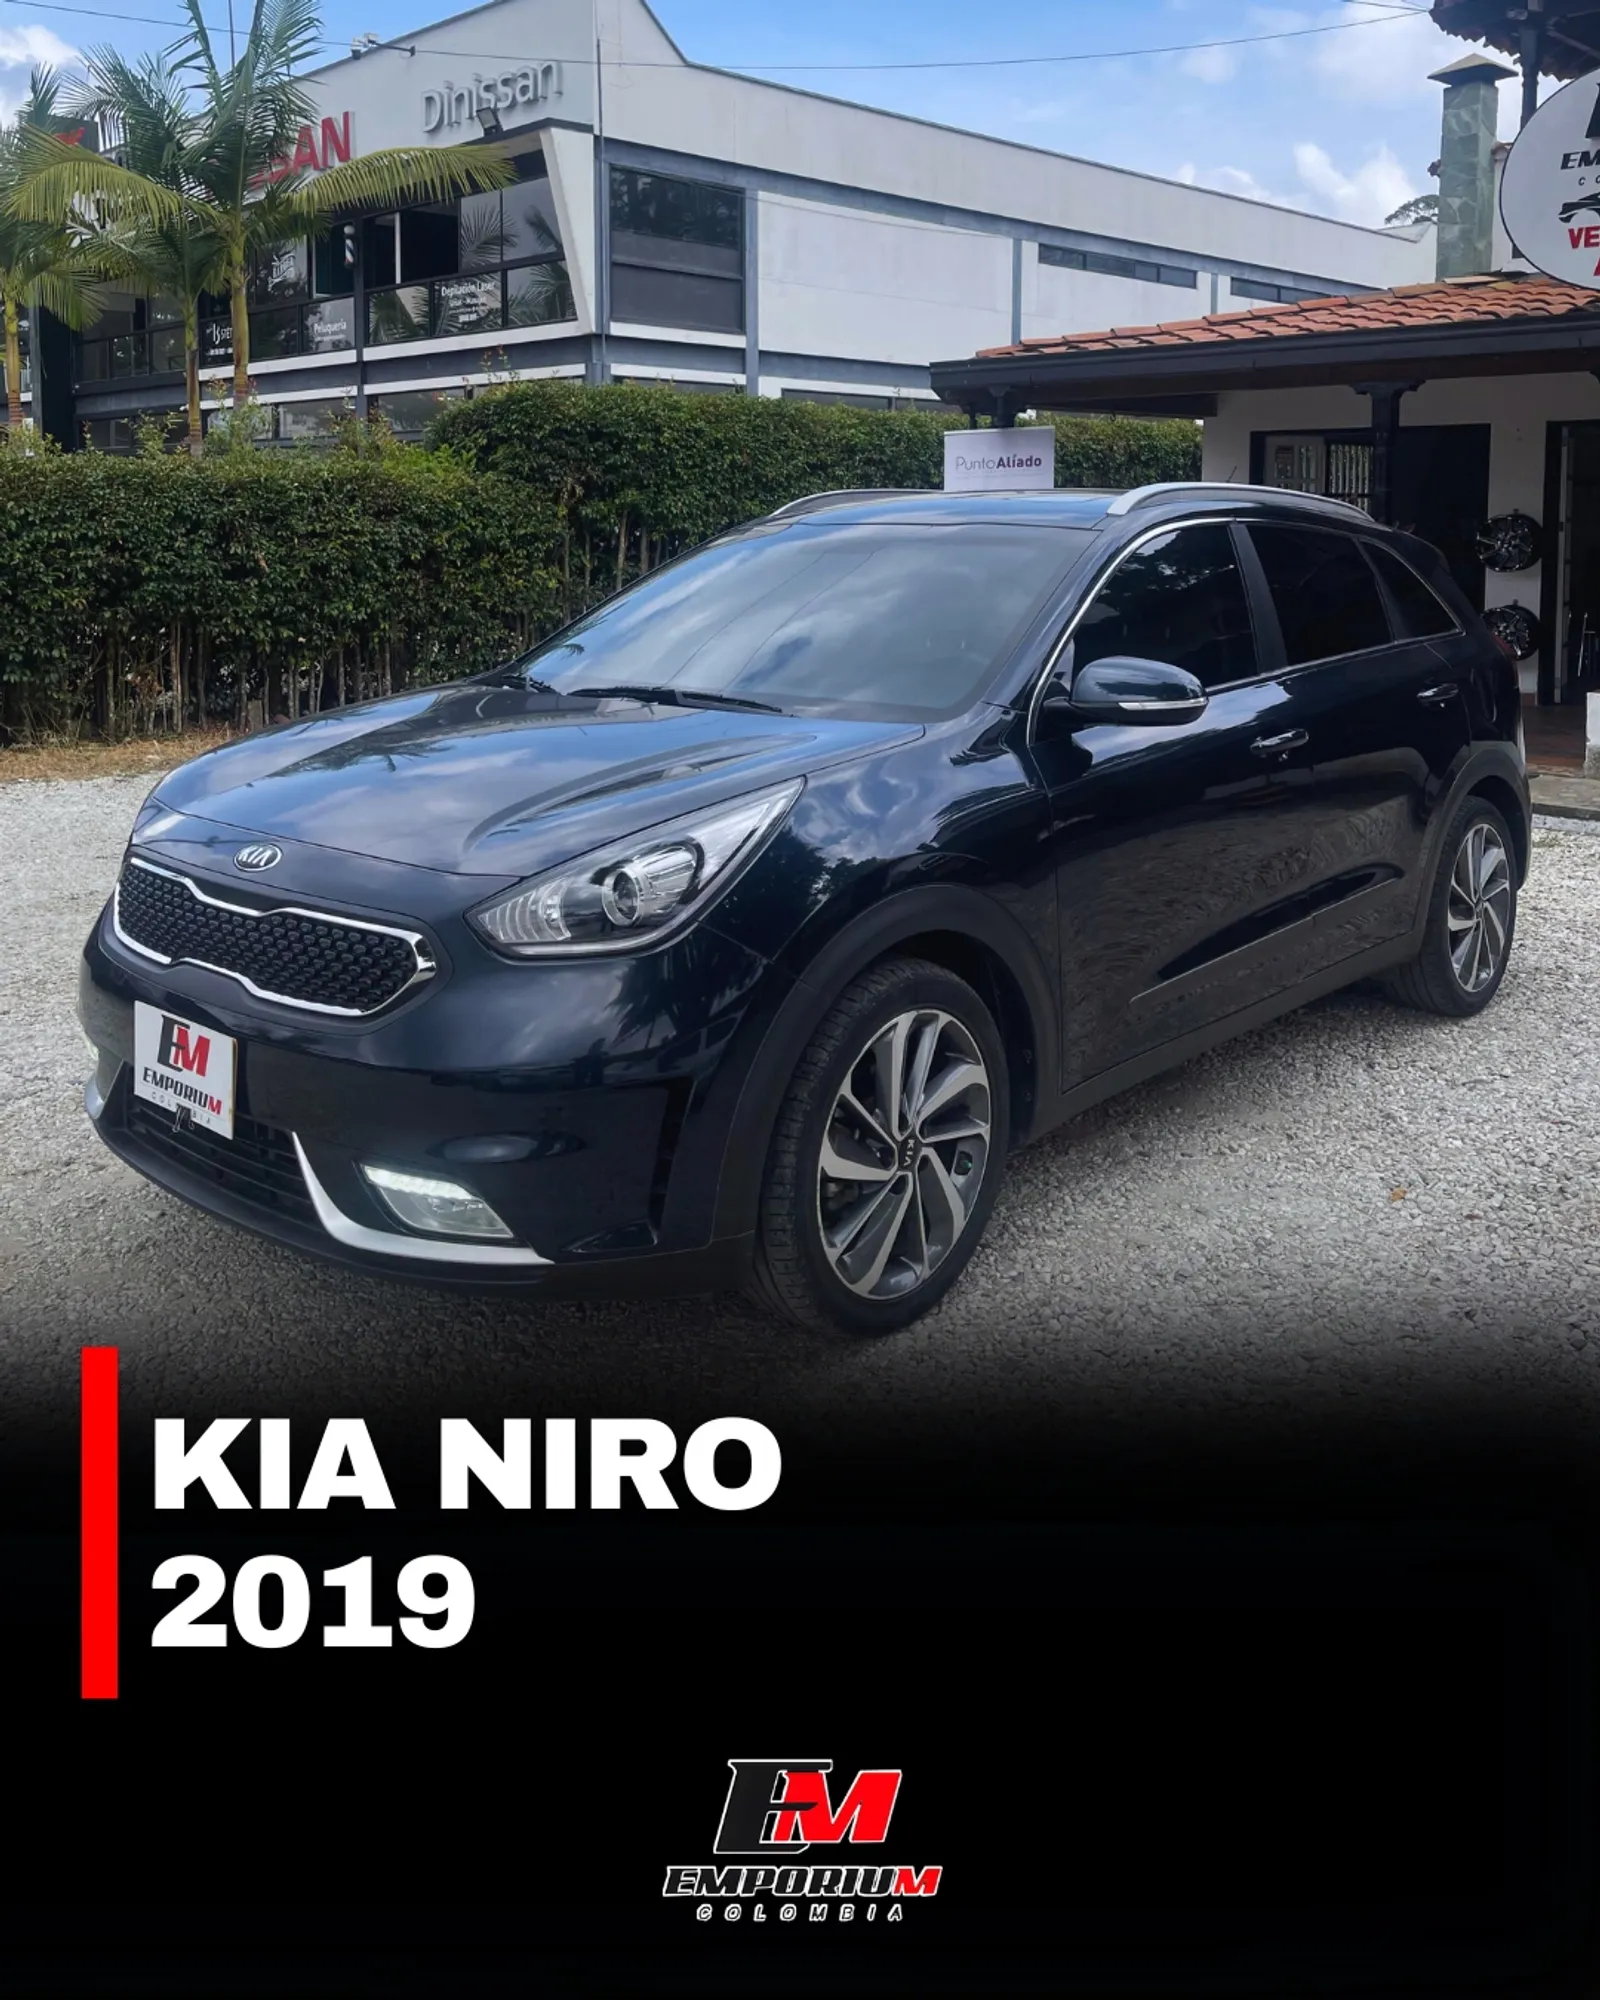 Kia Niro 2019